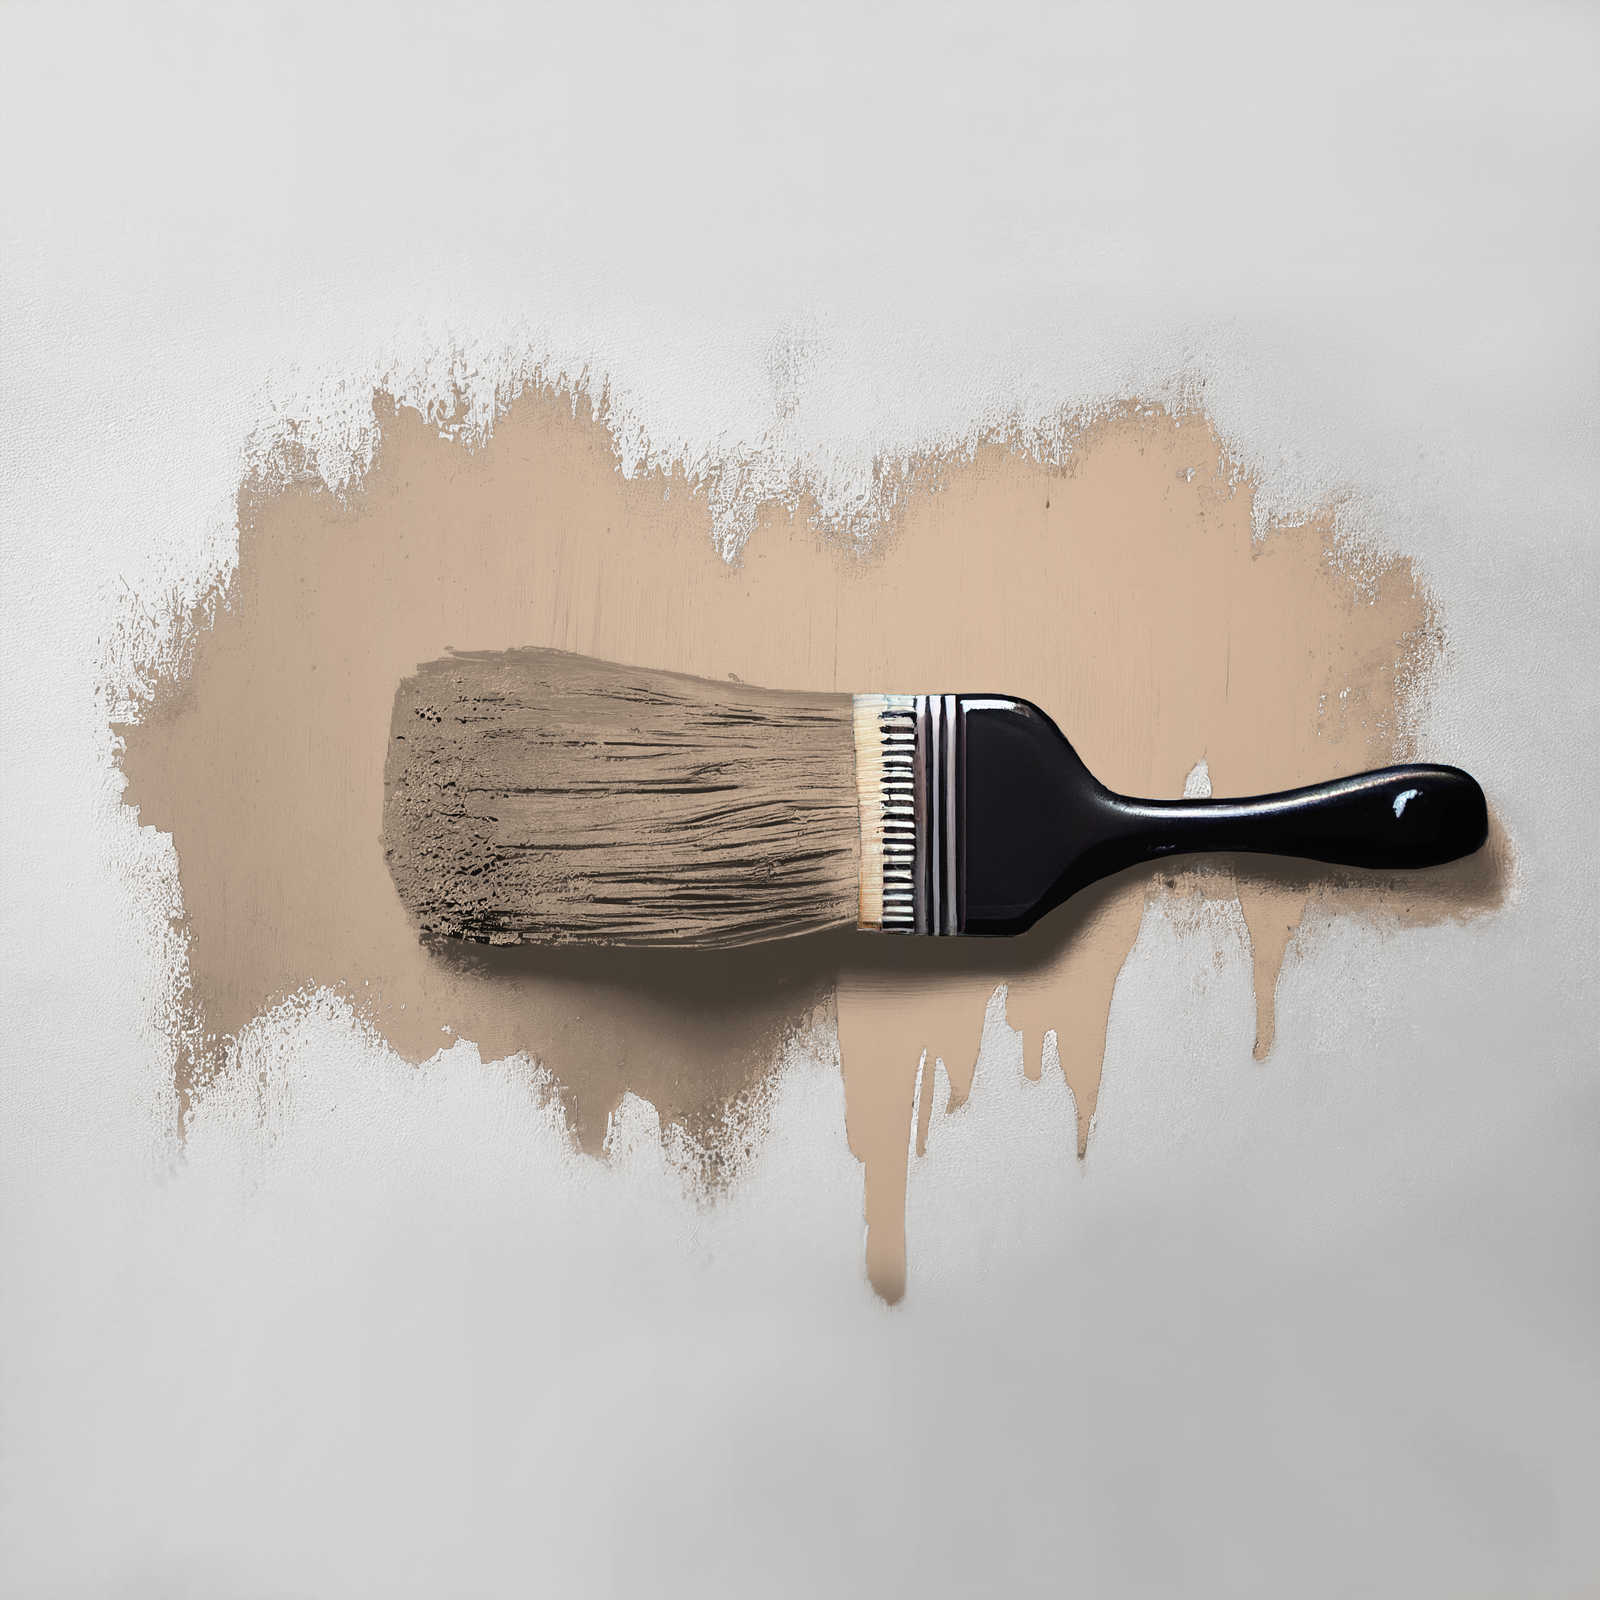             Pintura mural TCK6010 »Latte Macchhiato« en beige natural – 5,0 litro
        